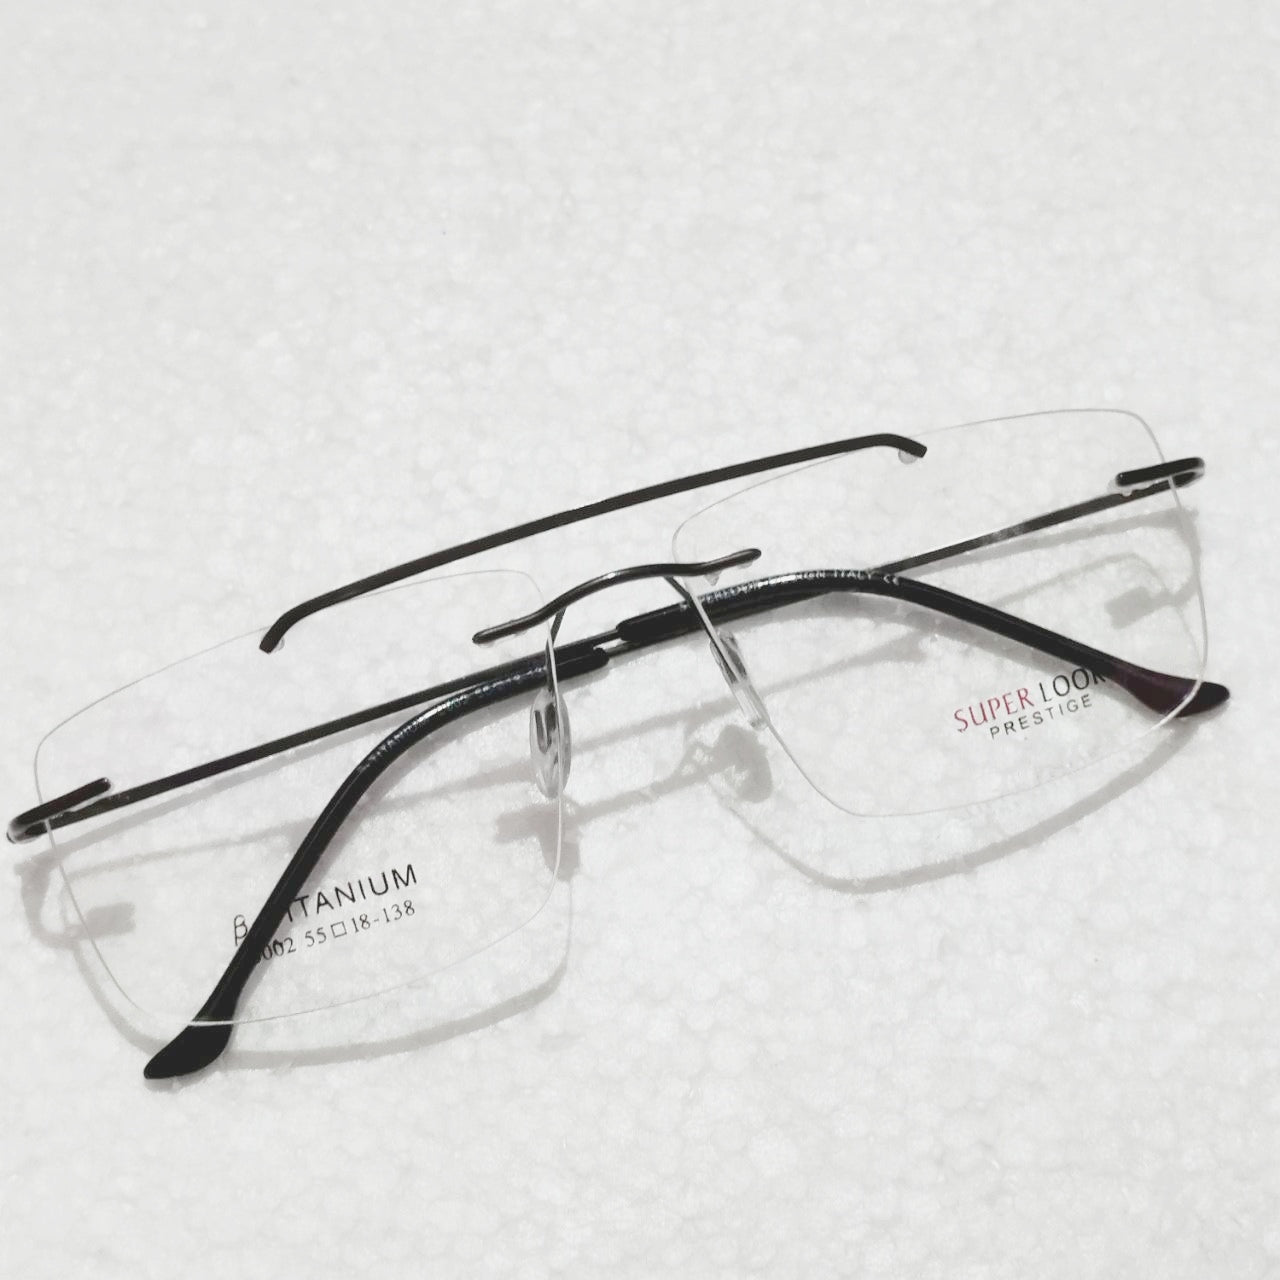 Grey Large Rectangle Rimless Glasses Frameless Specs For Single Vison Bifocal Progressive Lens